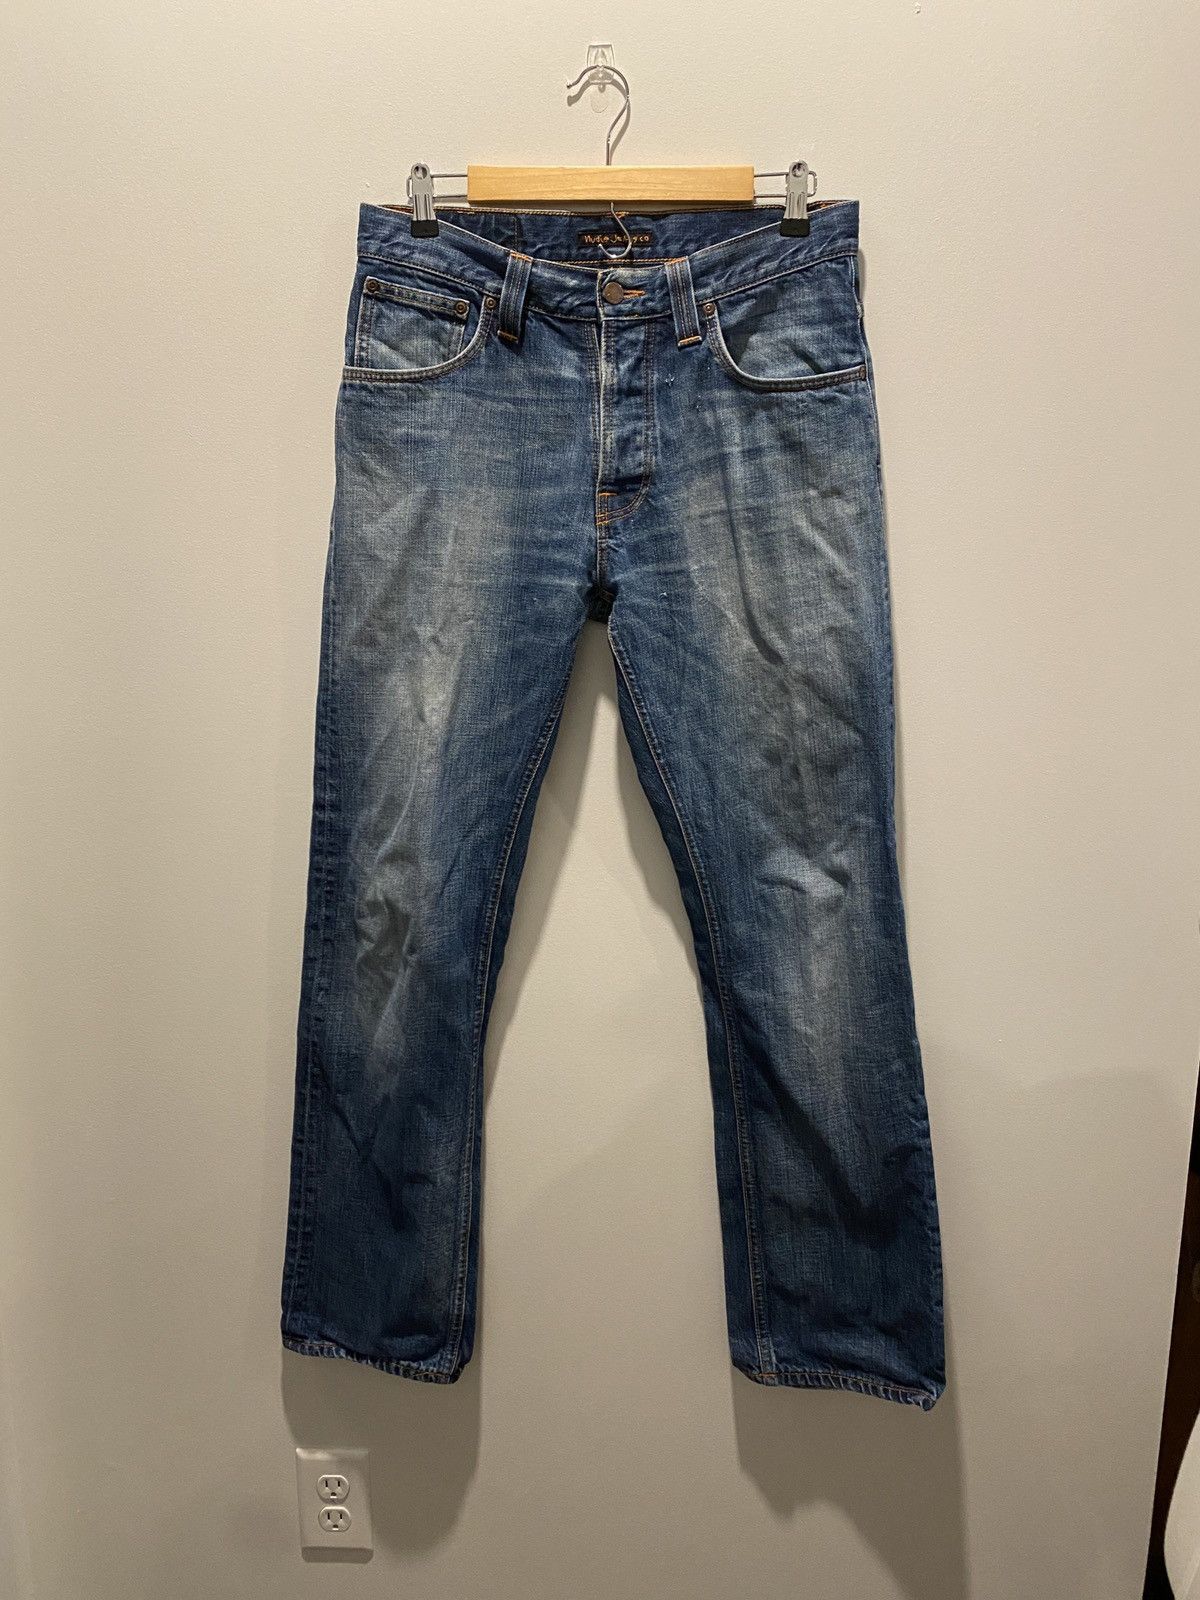 Nudie Jeans Nudie jeans average Joe organic cotton perfect blue 32 ...